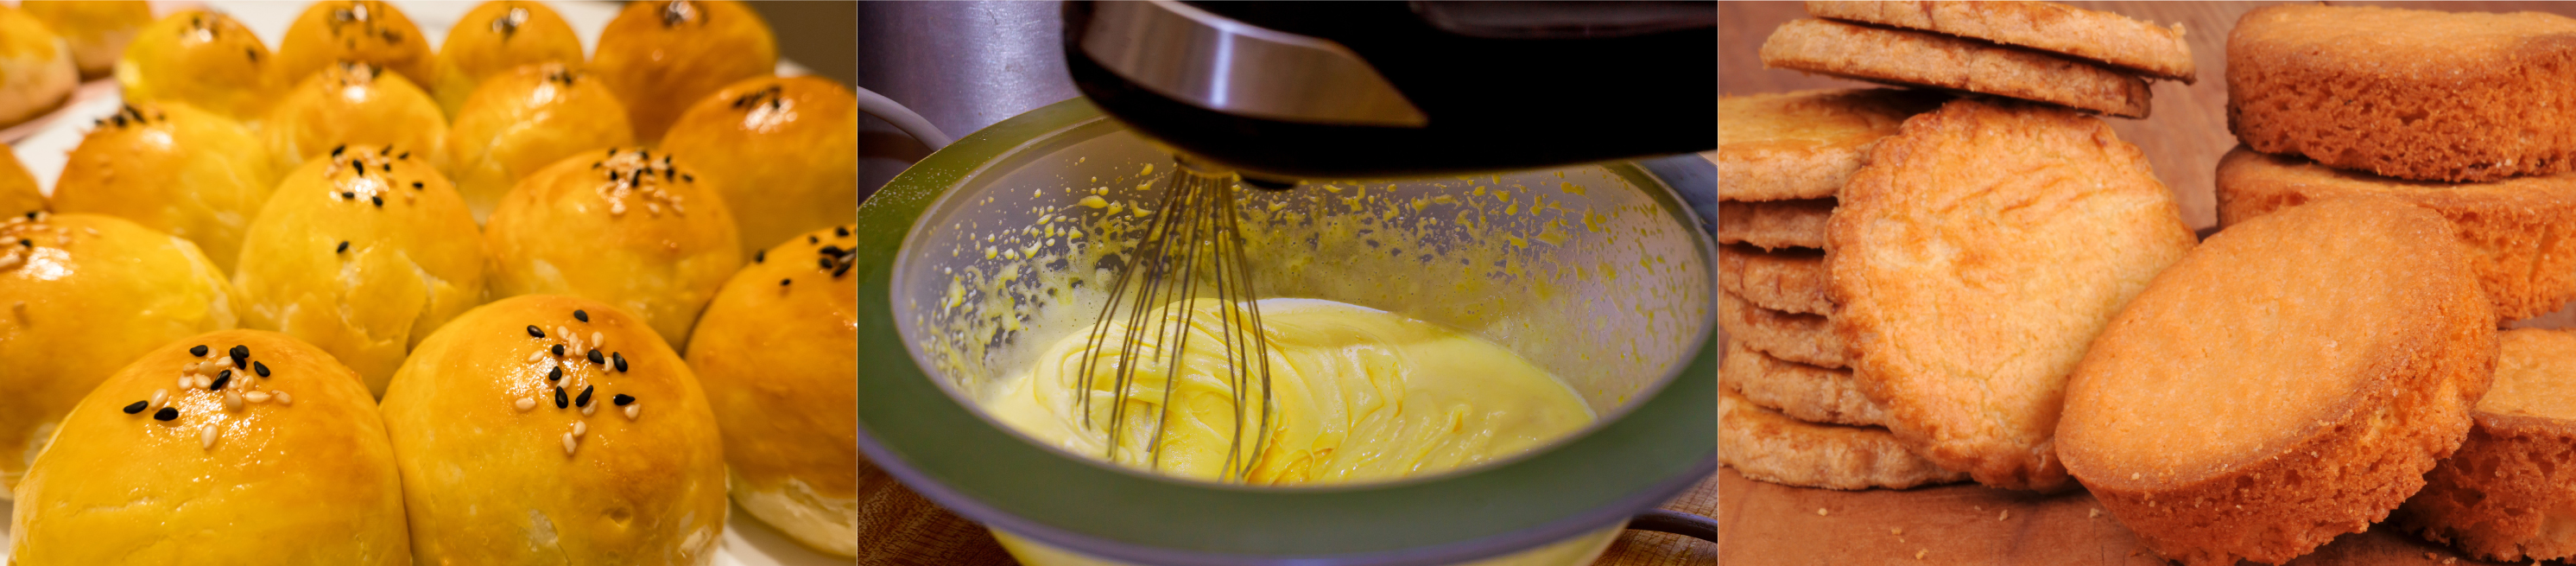 Les usages des jaunes d'oeufs en boulangerie pâtisserie